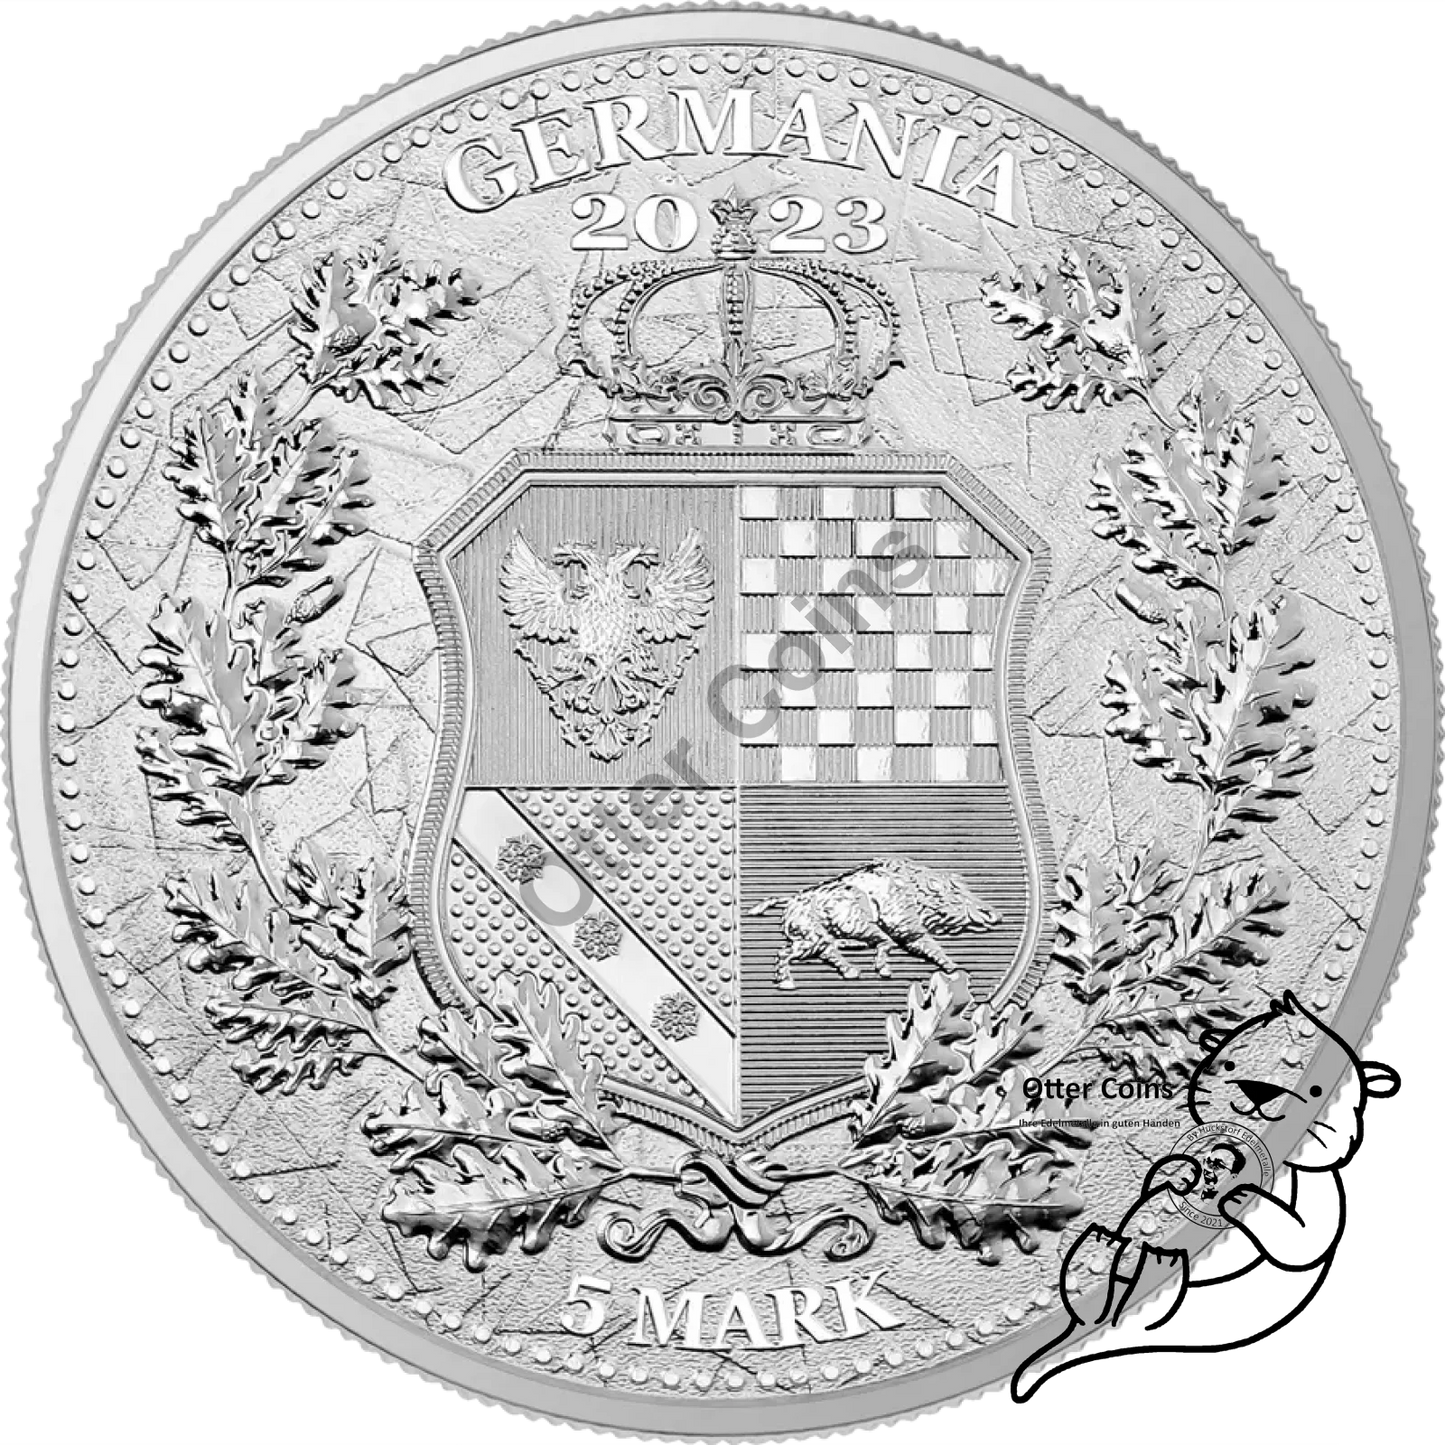 Germania Mint Allegories Galia & Germania 1 Oz Silbermünze